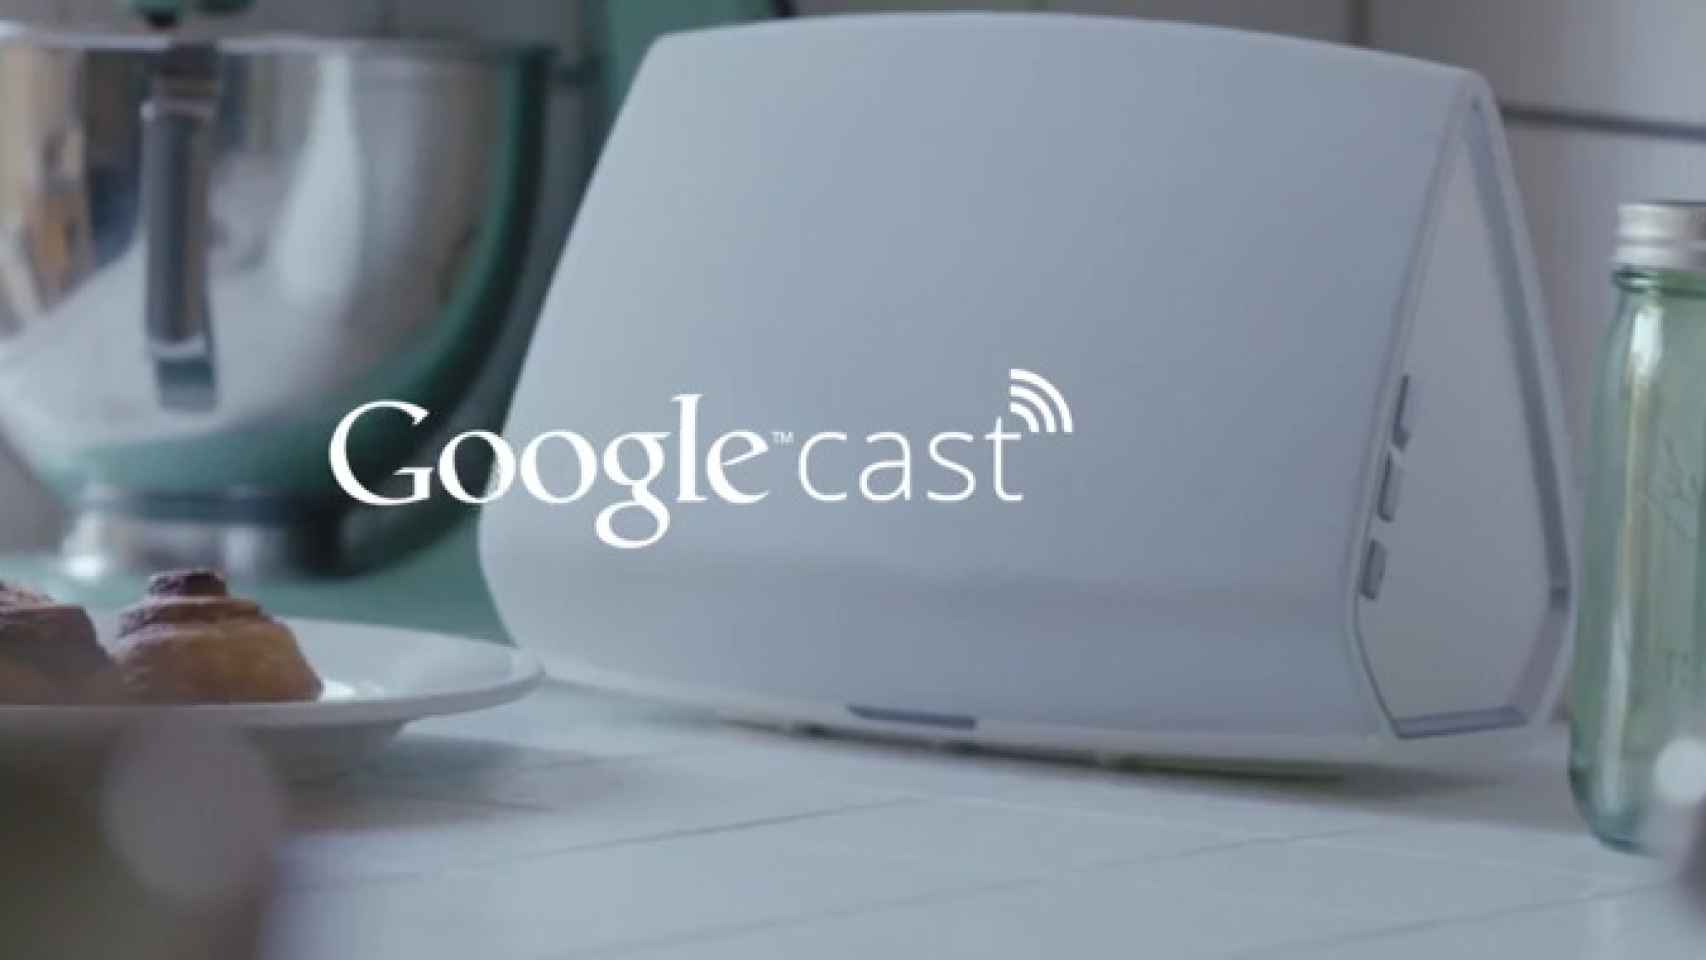 Google Cast envía música a tus altavoces, sin cables y en un toque